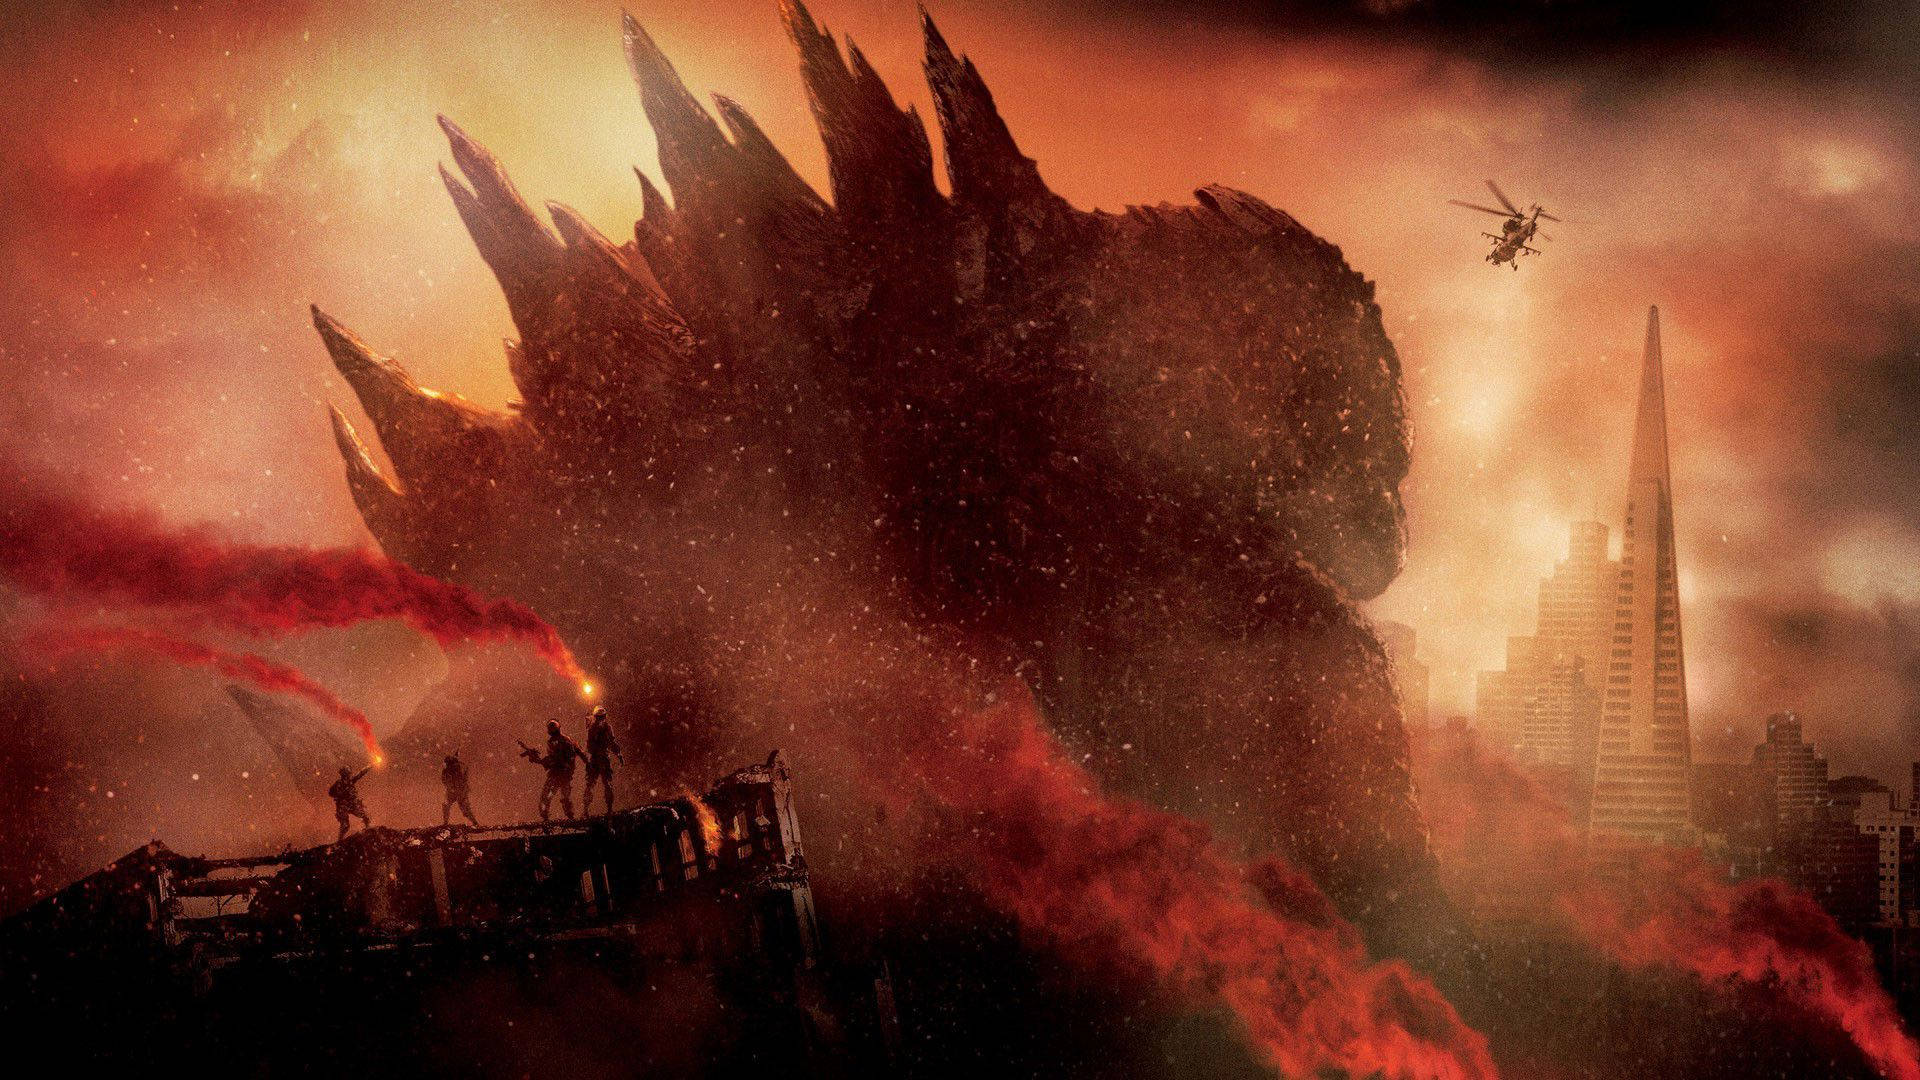 Godzilla 1920X1080 Wallpaper and Background Image